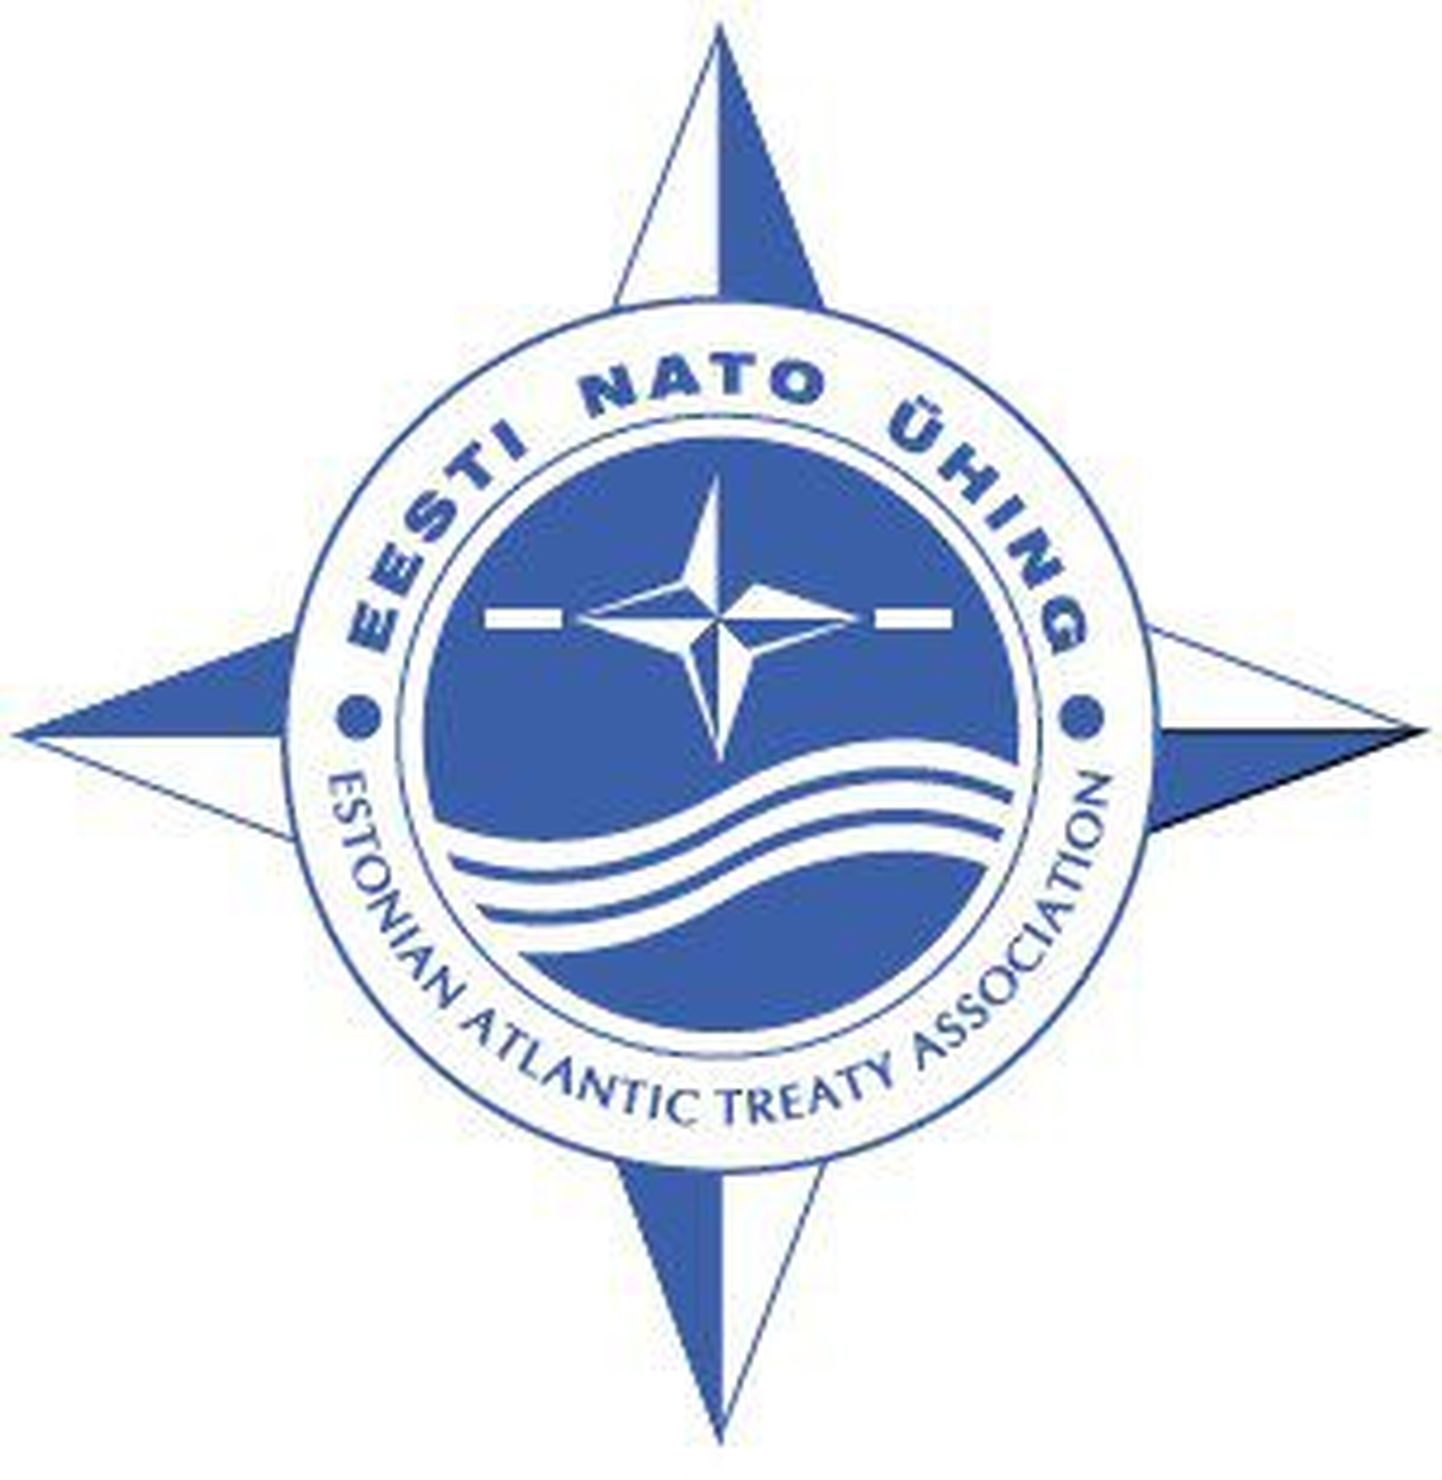 Eesti NATO Ühing